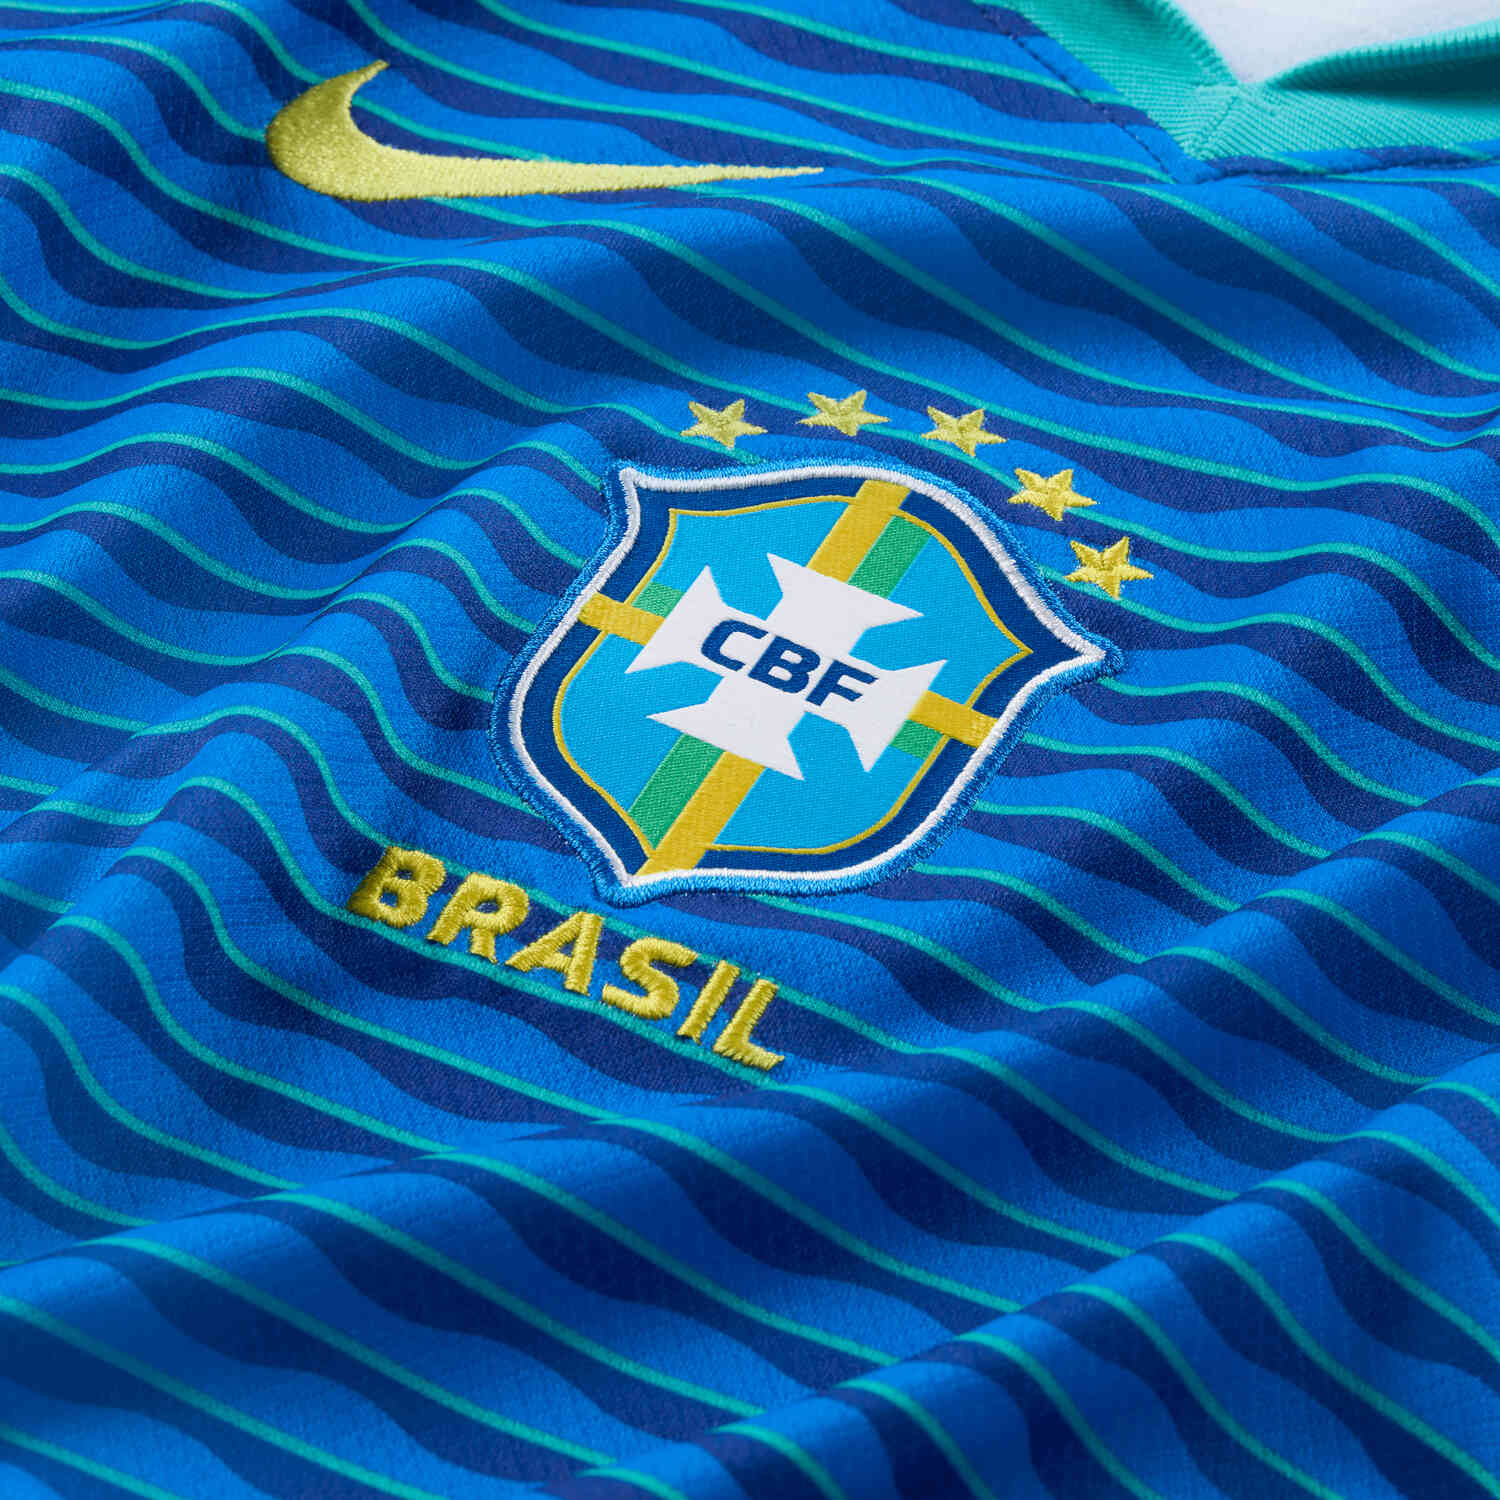 2024 Kids Nike Brazil Away Jersey - SoccerPro